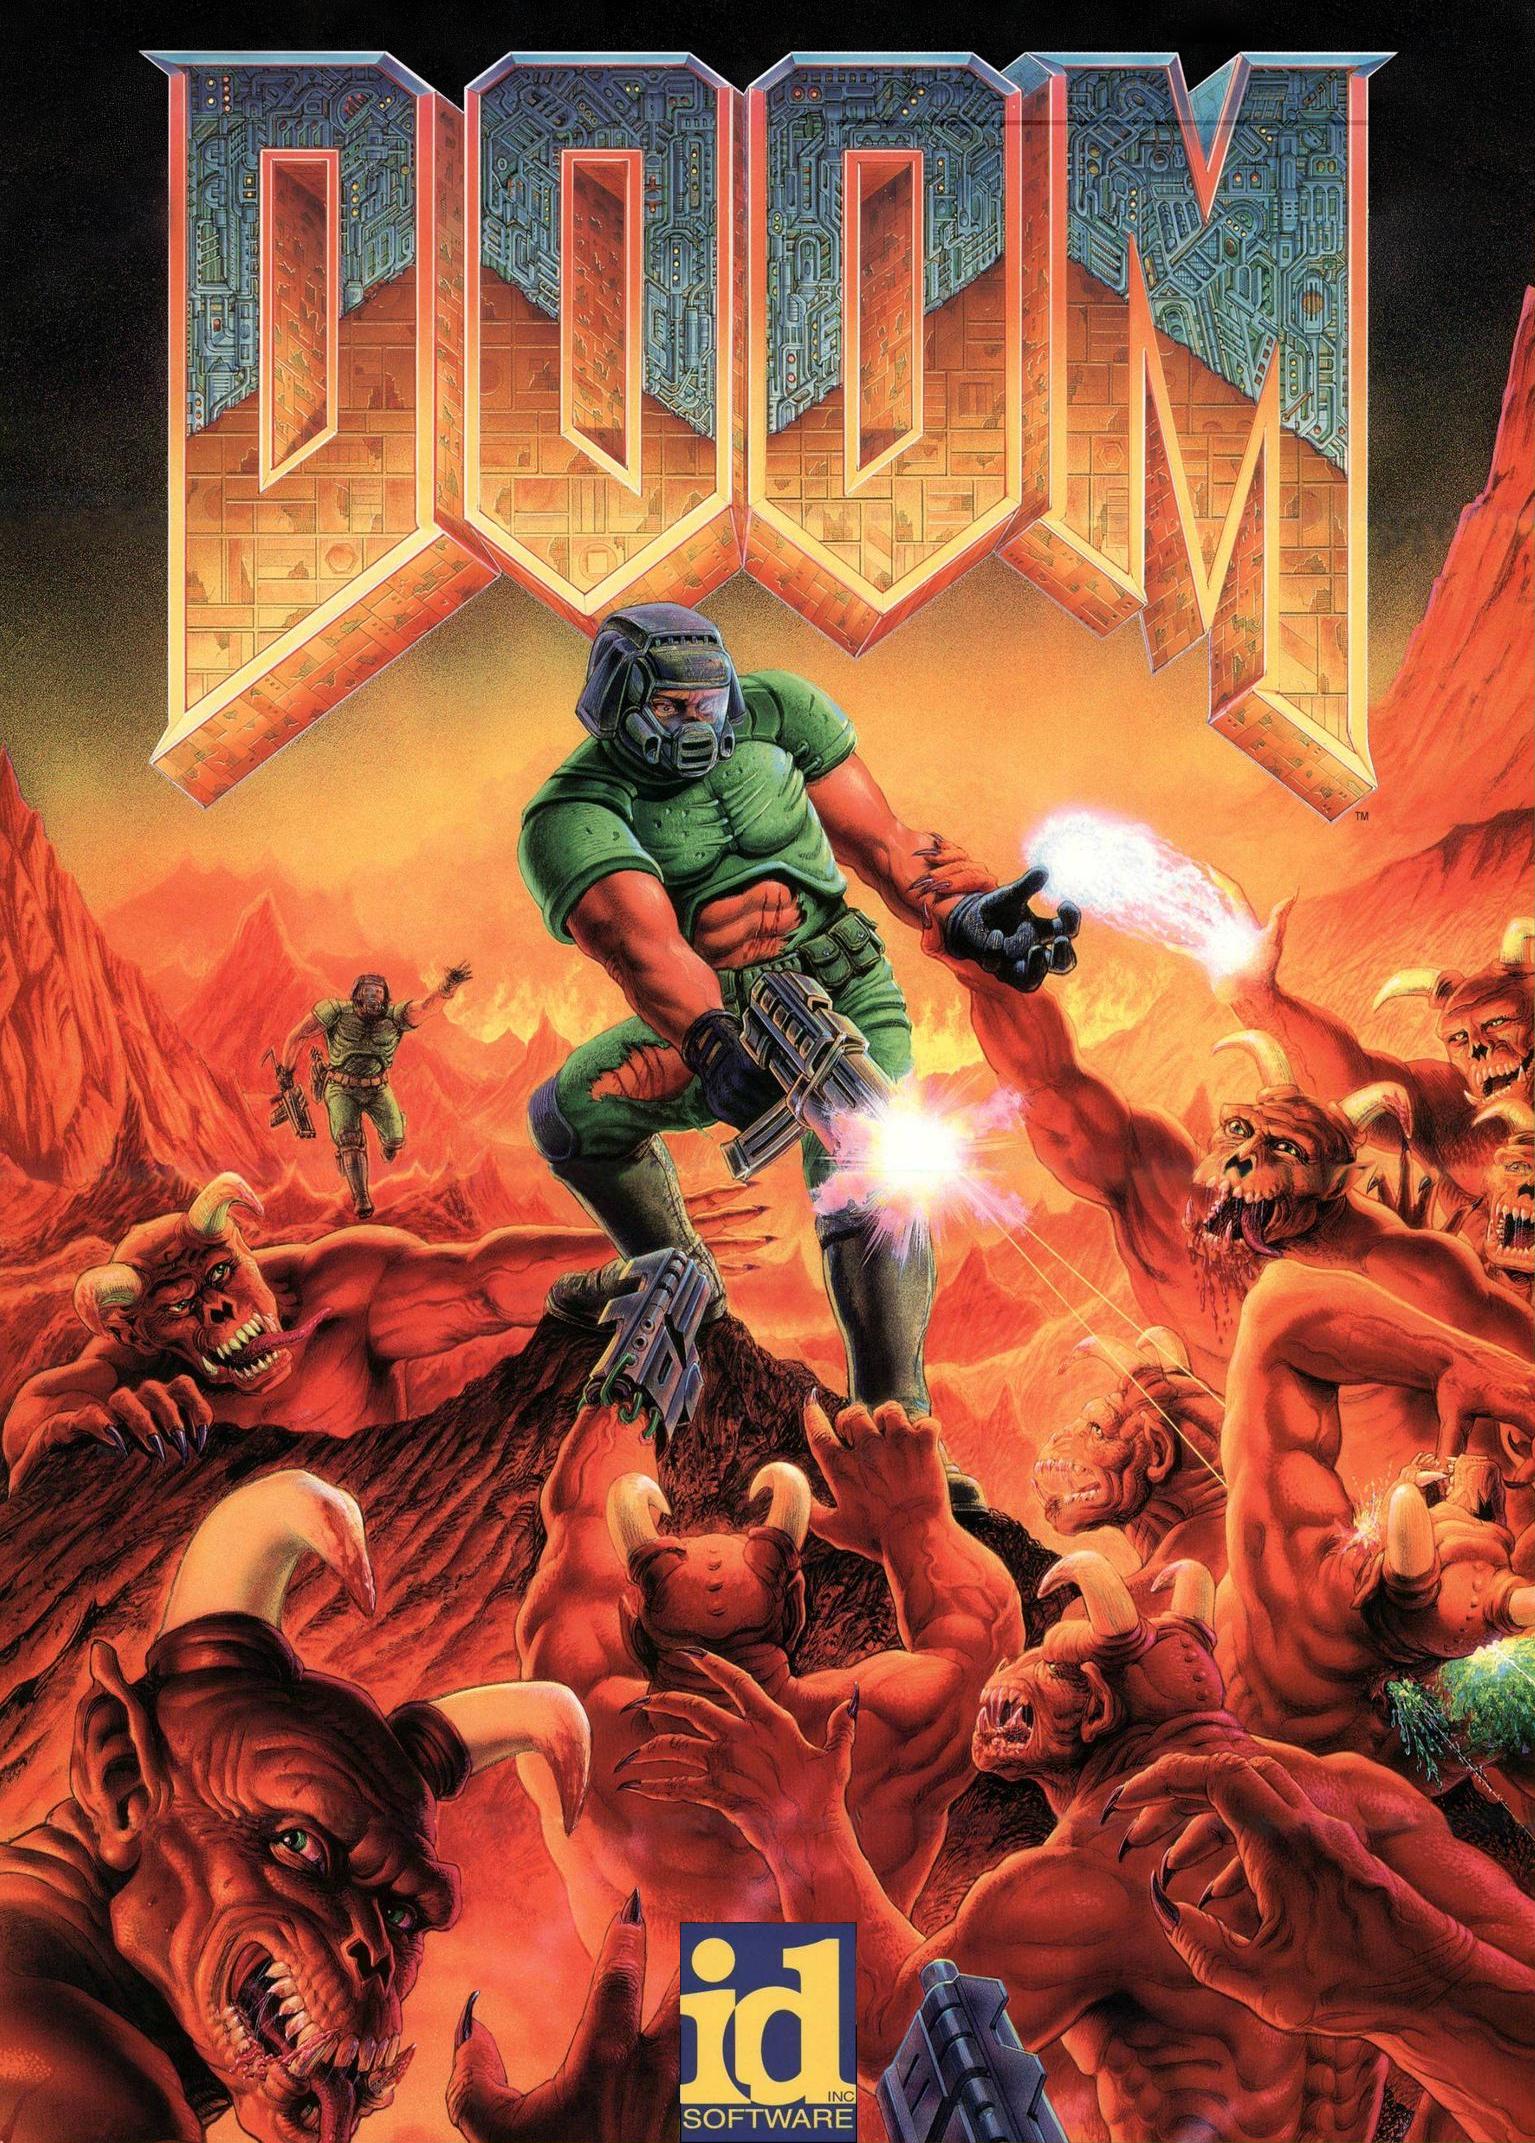 Doom 1993 Wallpapers - Wallpaper Cave